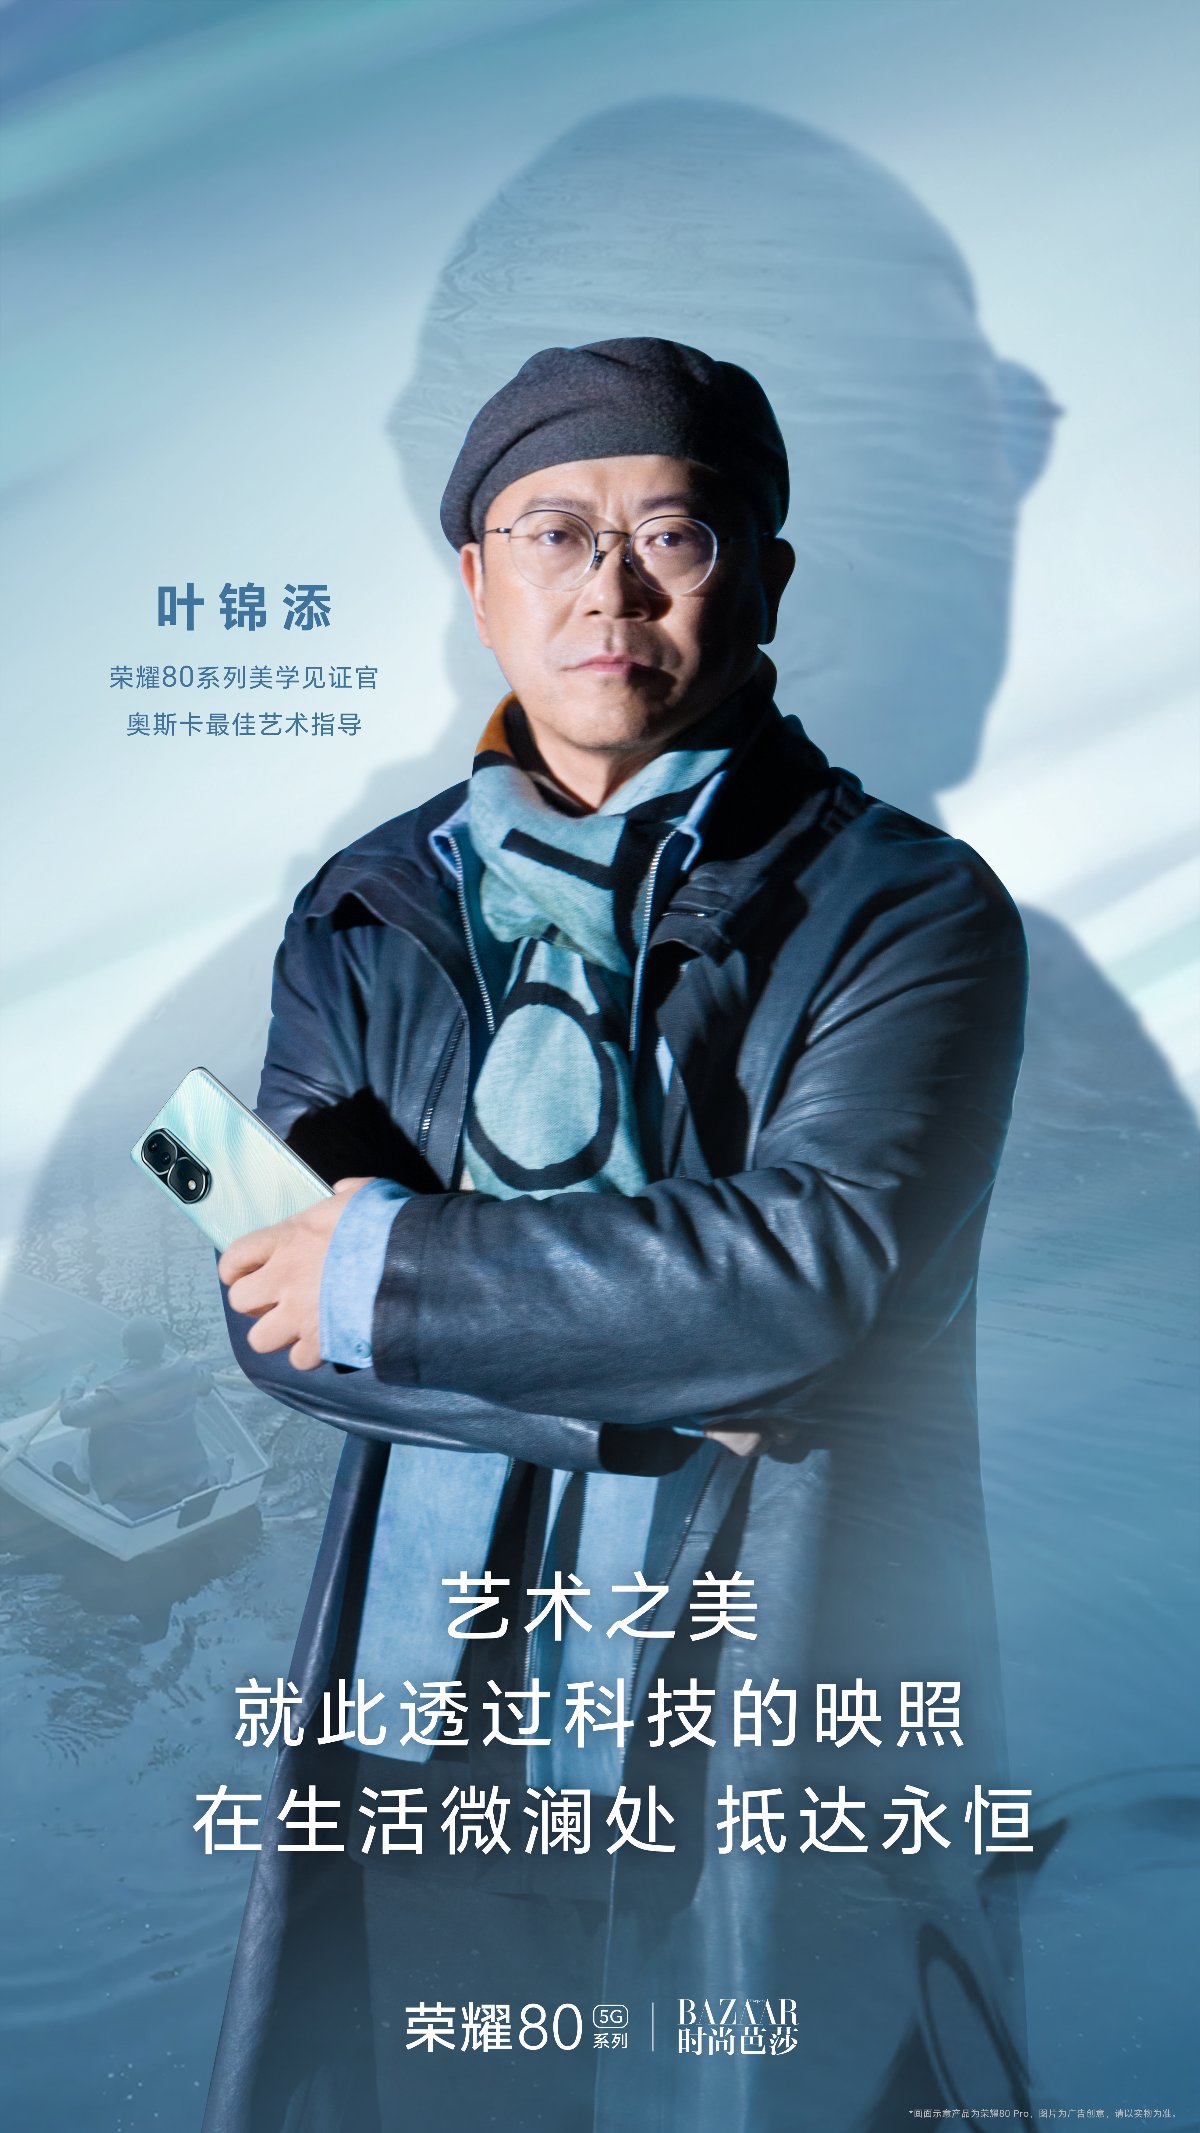 荣耀80系列11月23日发布 奥斯卡最佳艺术指导叶锦添担任美学见证官